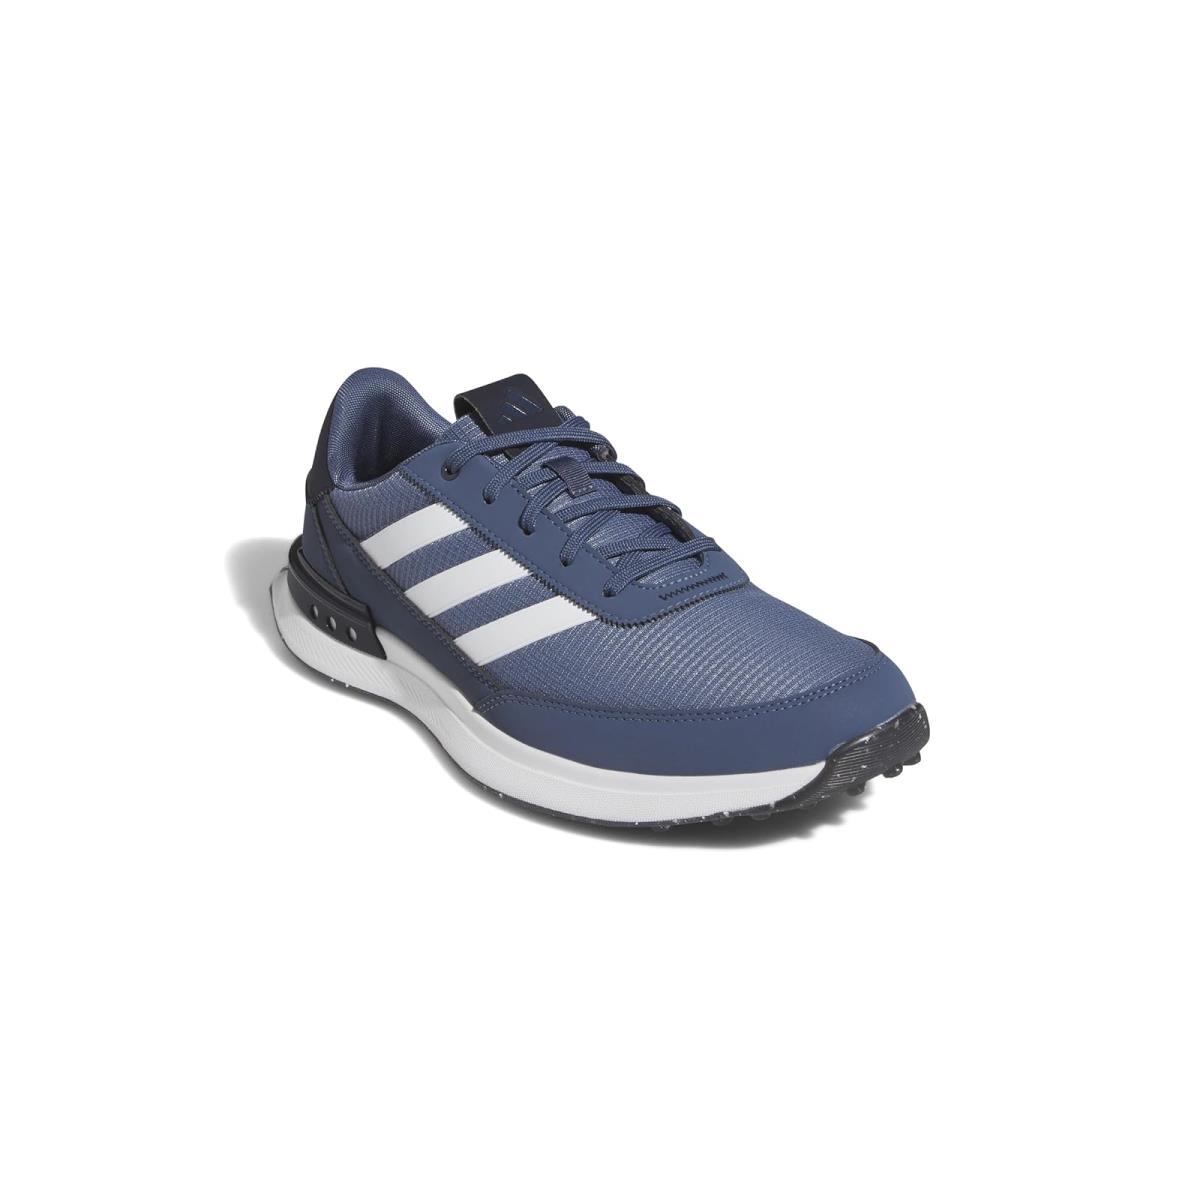 Man`s Sneakers Athletic Shoes Adidas Golf S2G SL 24 Prelovink/Footwear White/Legendink